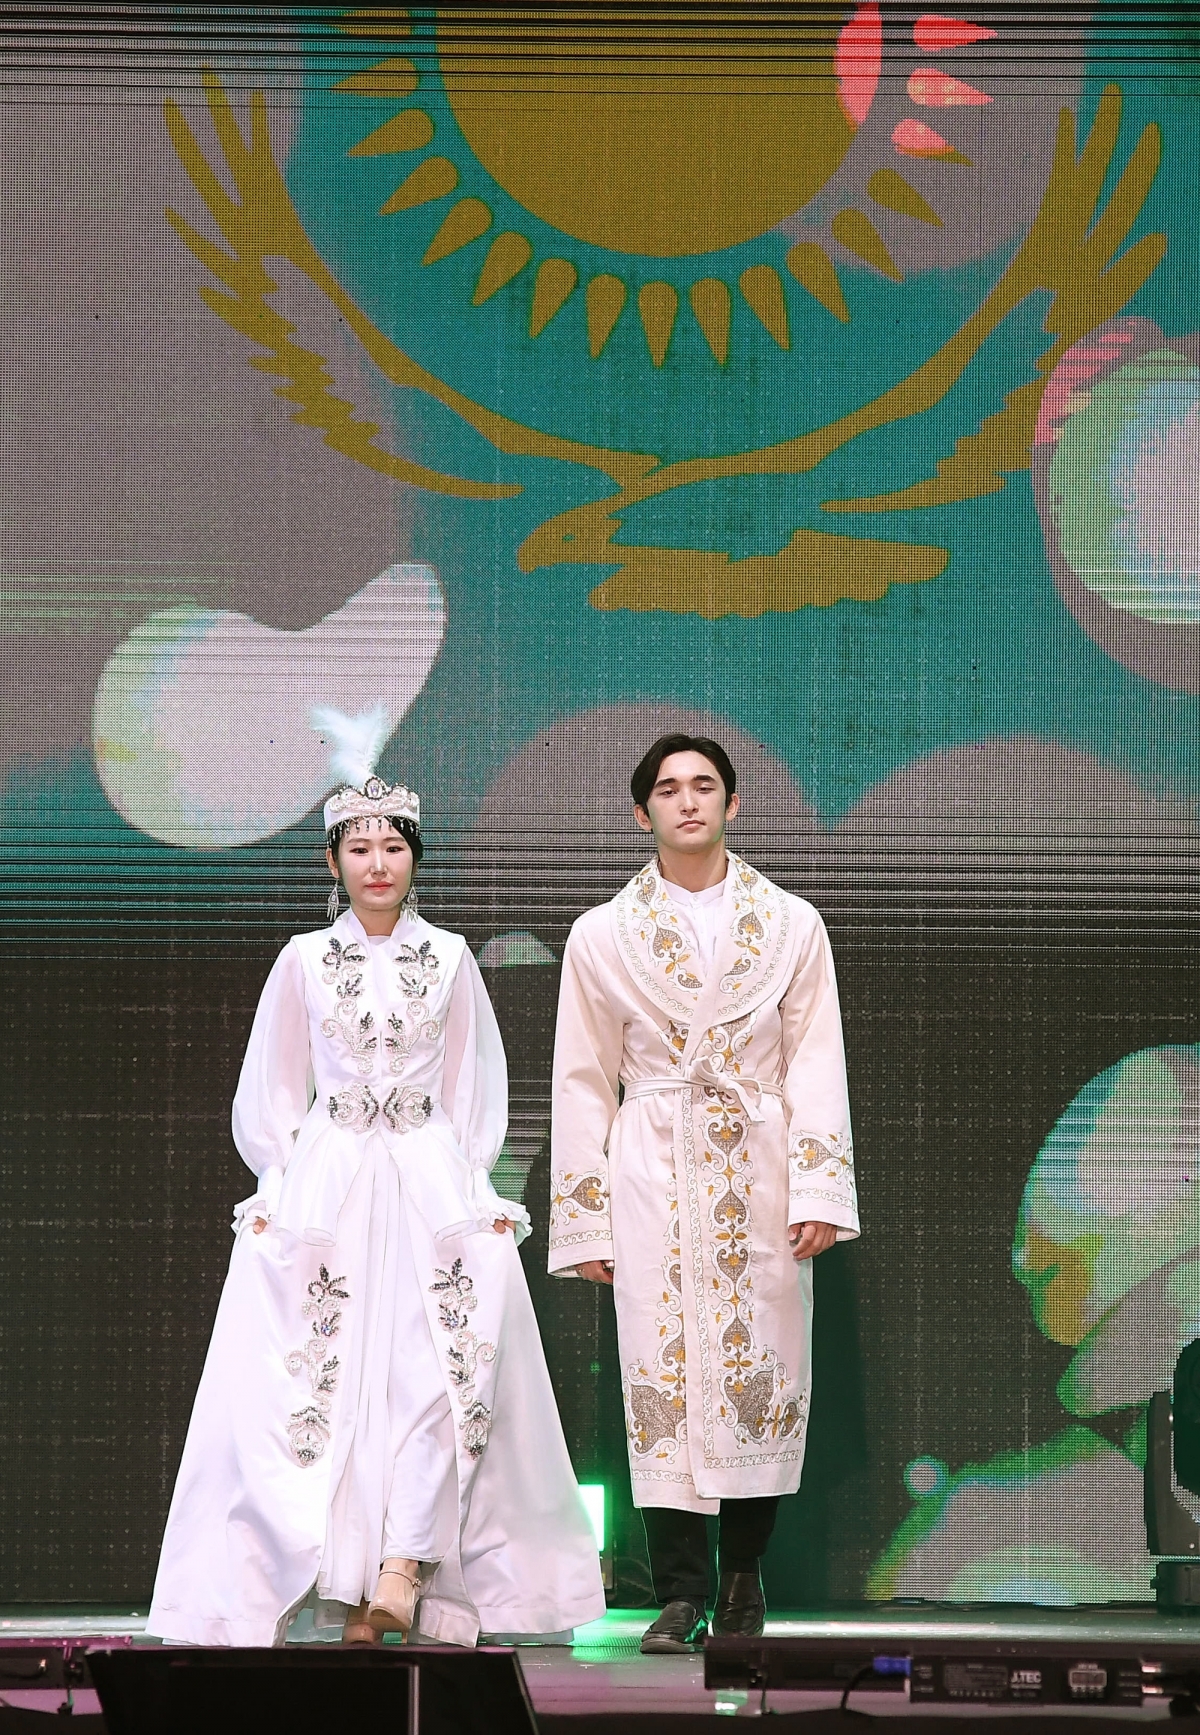 Trang phục nam giới Kazakhstan gắn liền với áo sơ mi, quần rộng và áo khoác dài shapan truyền thống với viền áo được thêu họa tiết đặc sắc. Trang phục nữ giới đa dạng trong màu sắc và kiểu dáng phụ thuộc vào tuổi tác và tình trạng hôn nhân của người mặc nhưng đều gồm quần, áo dài (còn gọi là koylek) áo gilê. Nón của phụ nữ Kazakhstan được trang trí bằng nhiều chất liệu khác nhau như đá quý, ngọc trai, san hô với nhiều kiểu dáng độc đáo. Đặc biệt nón Takiya truyền thống được đính lông cú không chỉ với mục đích trang trí, mà còn đóng vai trò của một lá bùa hộ mệnh cho người sử dụng.